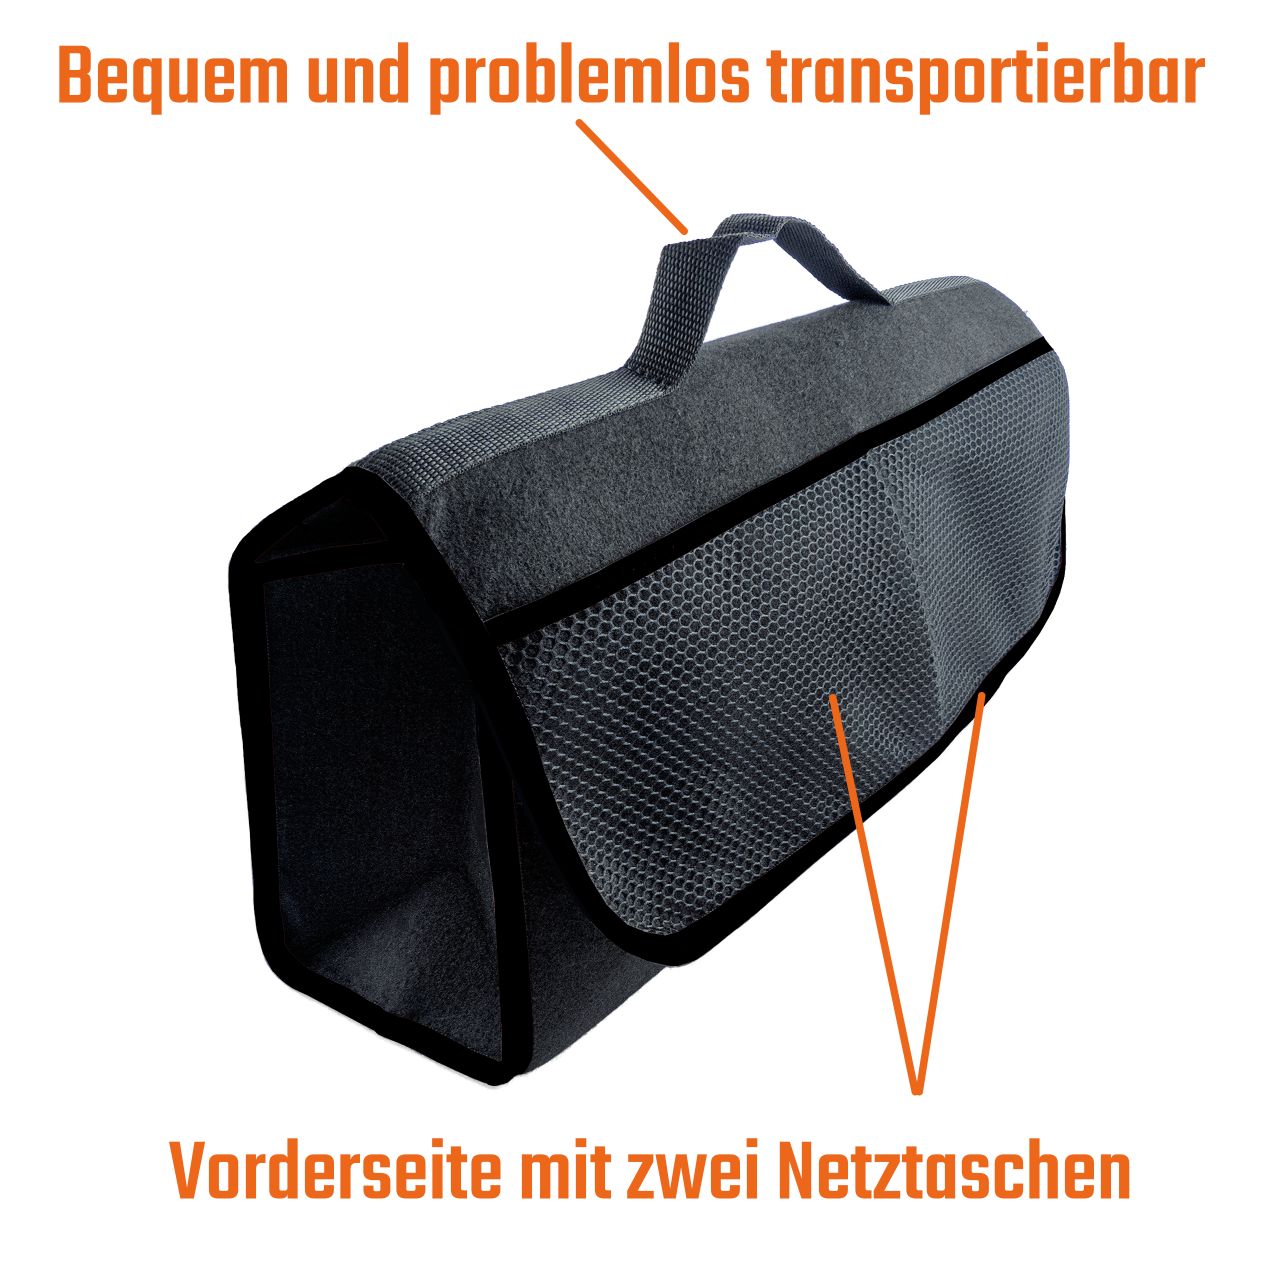 https://www.kennzeichenmax.de/images/image-1-kofferraumtasche-schwarz-gro%C3%9F.jpg